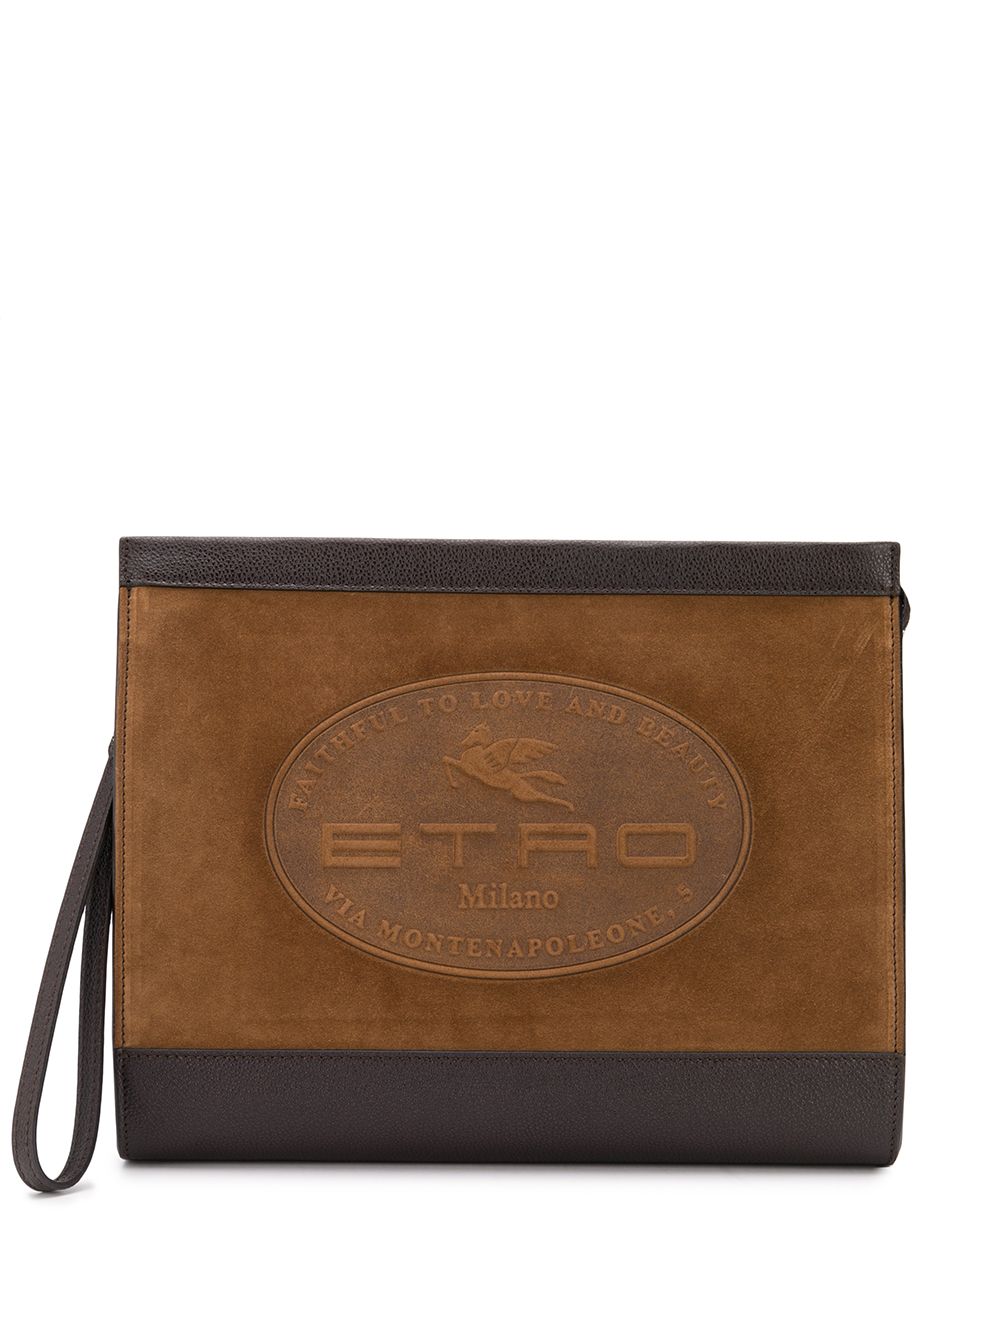 фото Etro клатч с тисненым логотипом